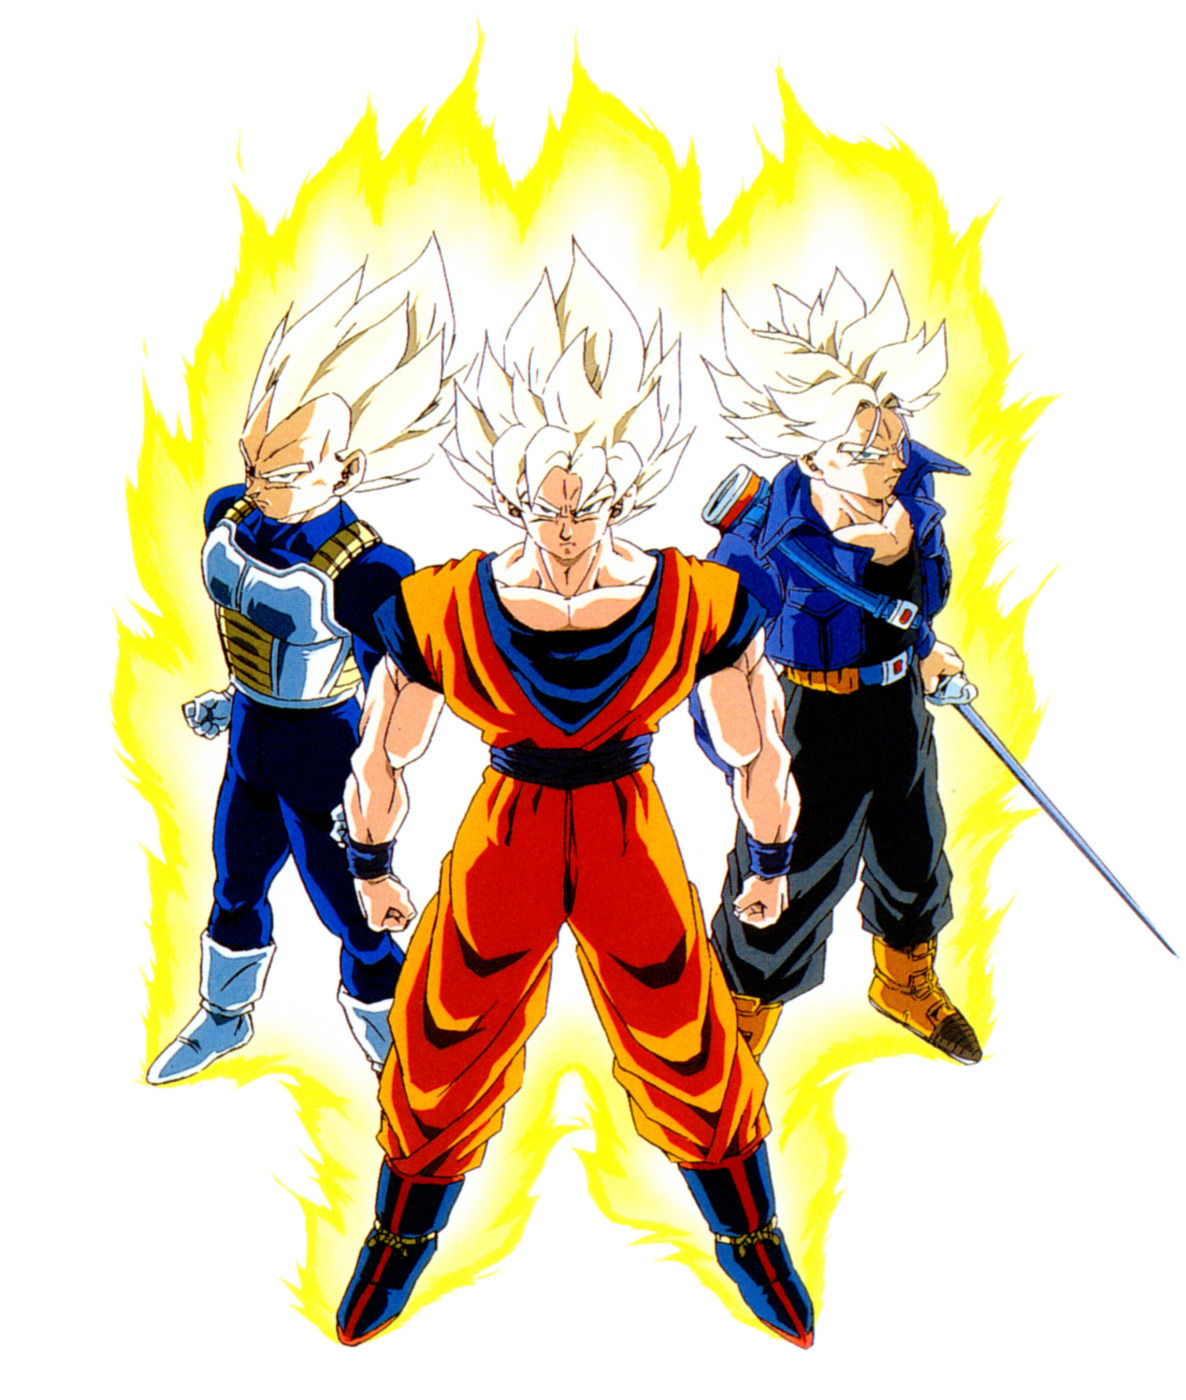 80s & 90s Dragon Ball Art — Promotional image of Super Saiya-jin Goku ...